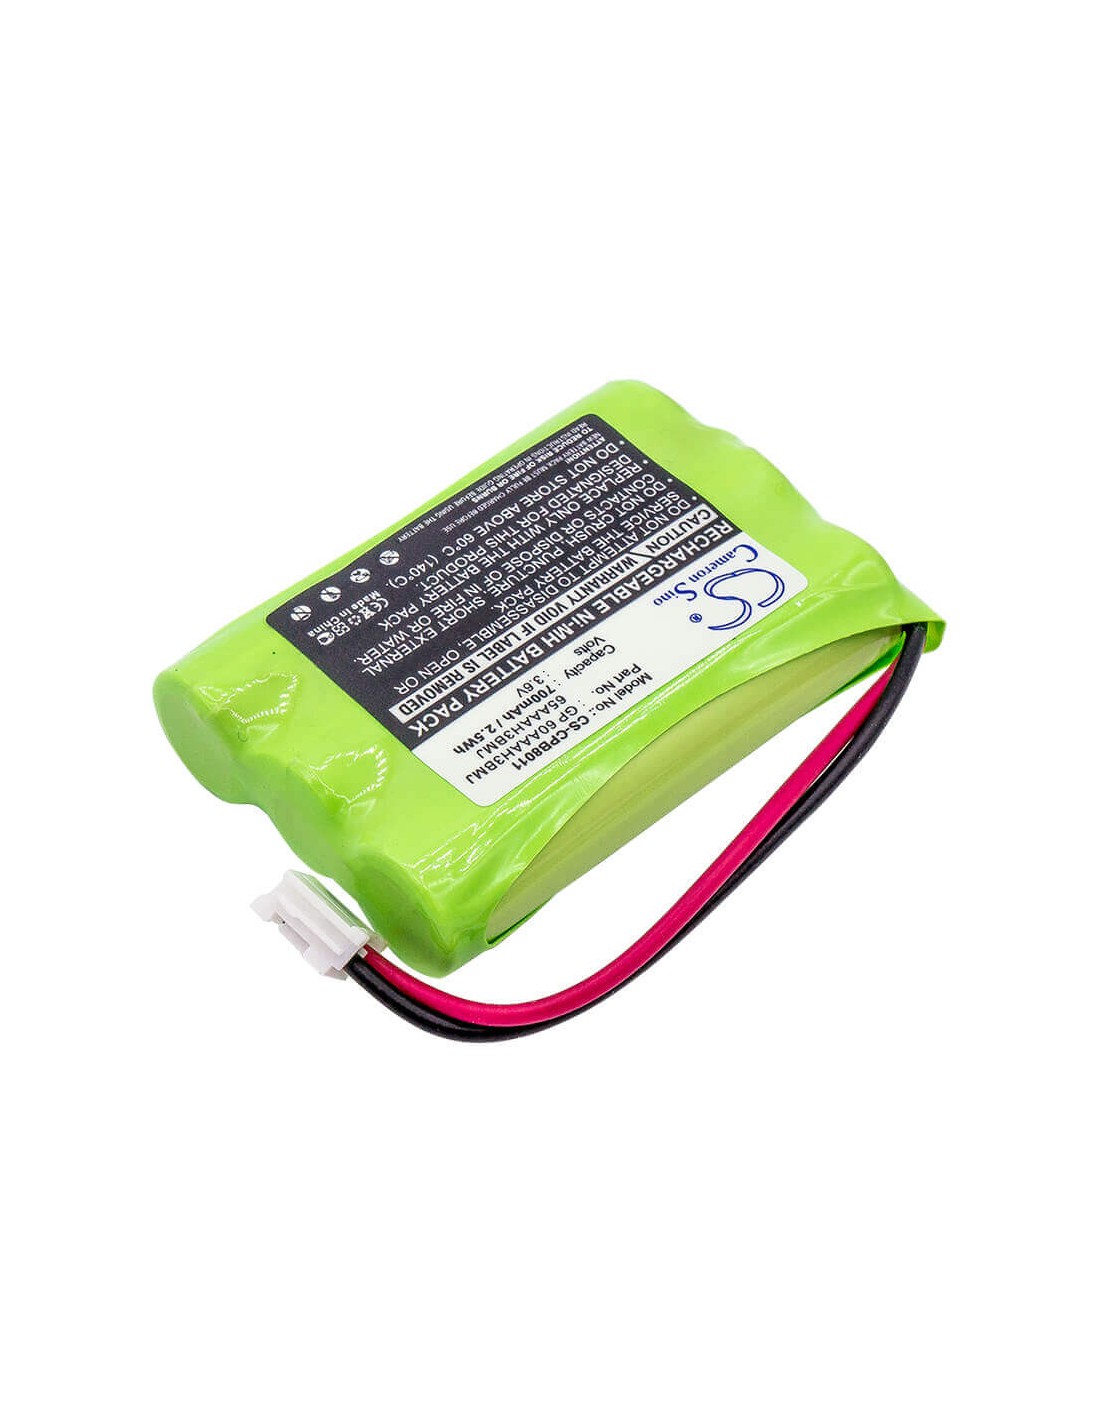 Battery for Nomad, 27910, 8058480000, 8900990000, E1112, 3.6V, 700mAh - 2.52Wh